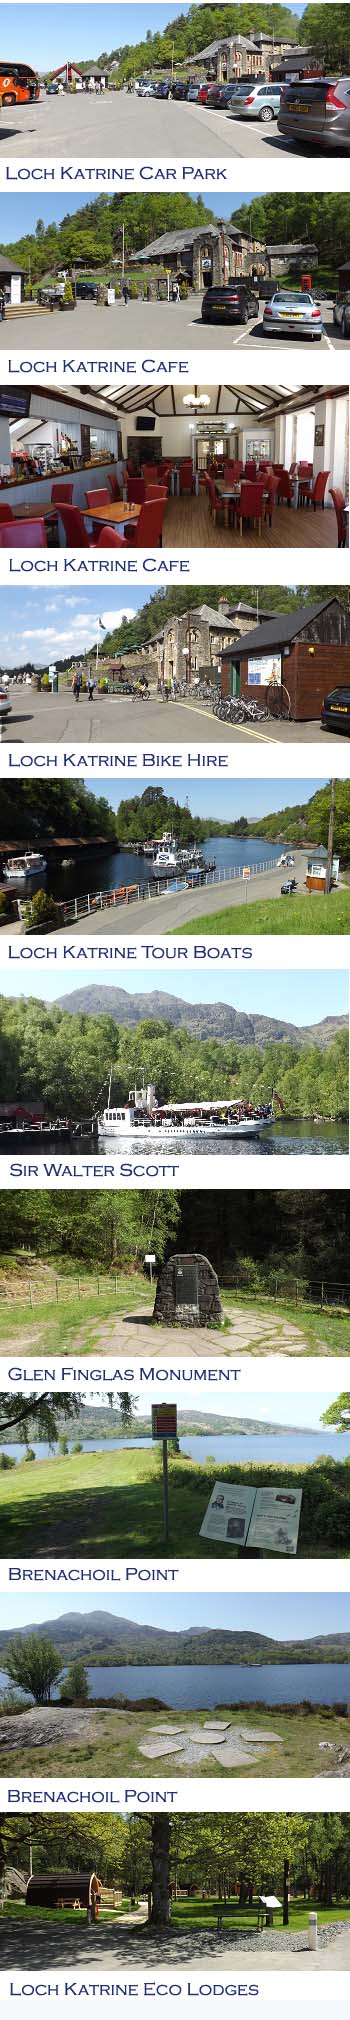 Loch Katrine Photos